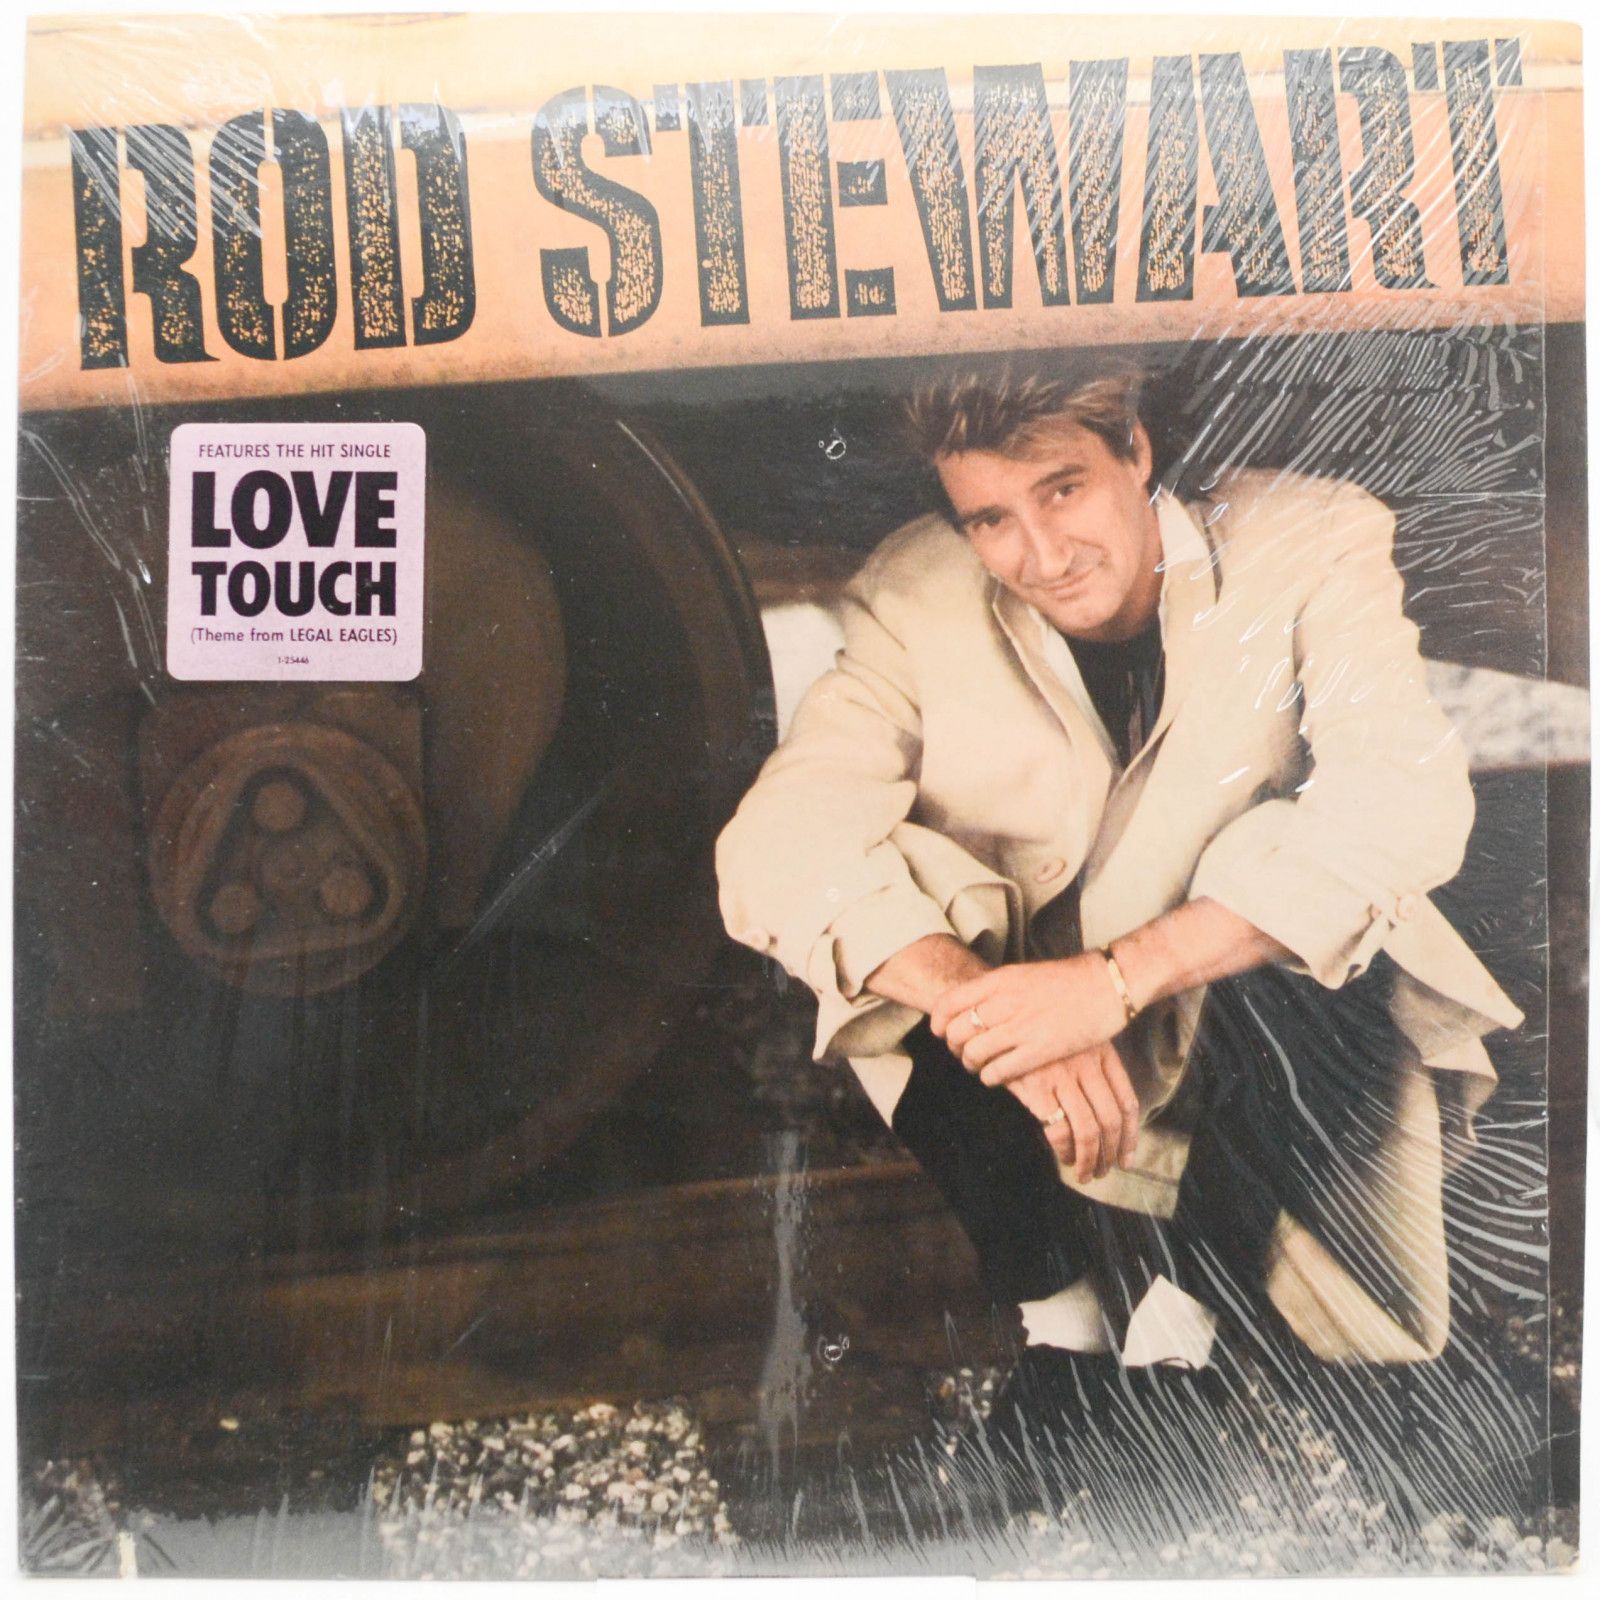 Rod Stewart — Rod Stewart (USA), 1986